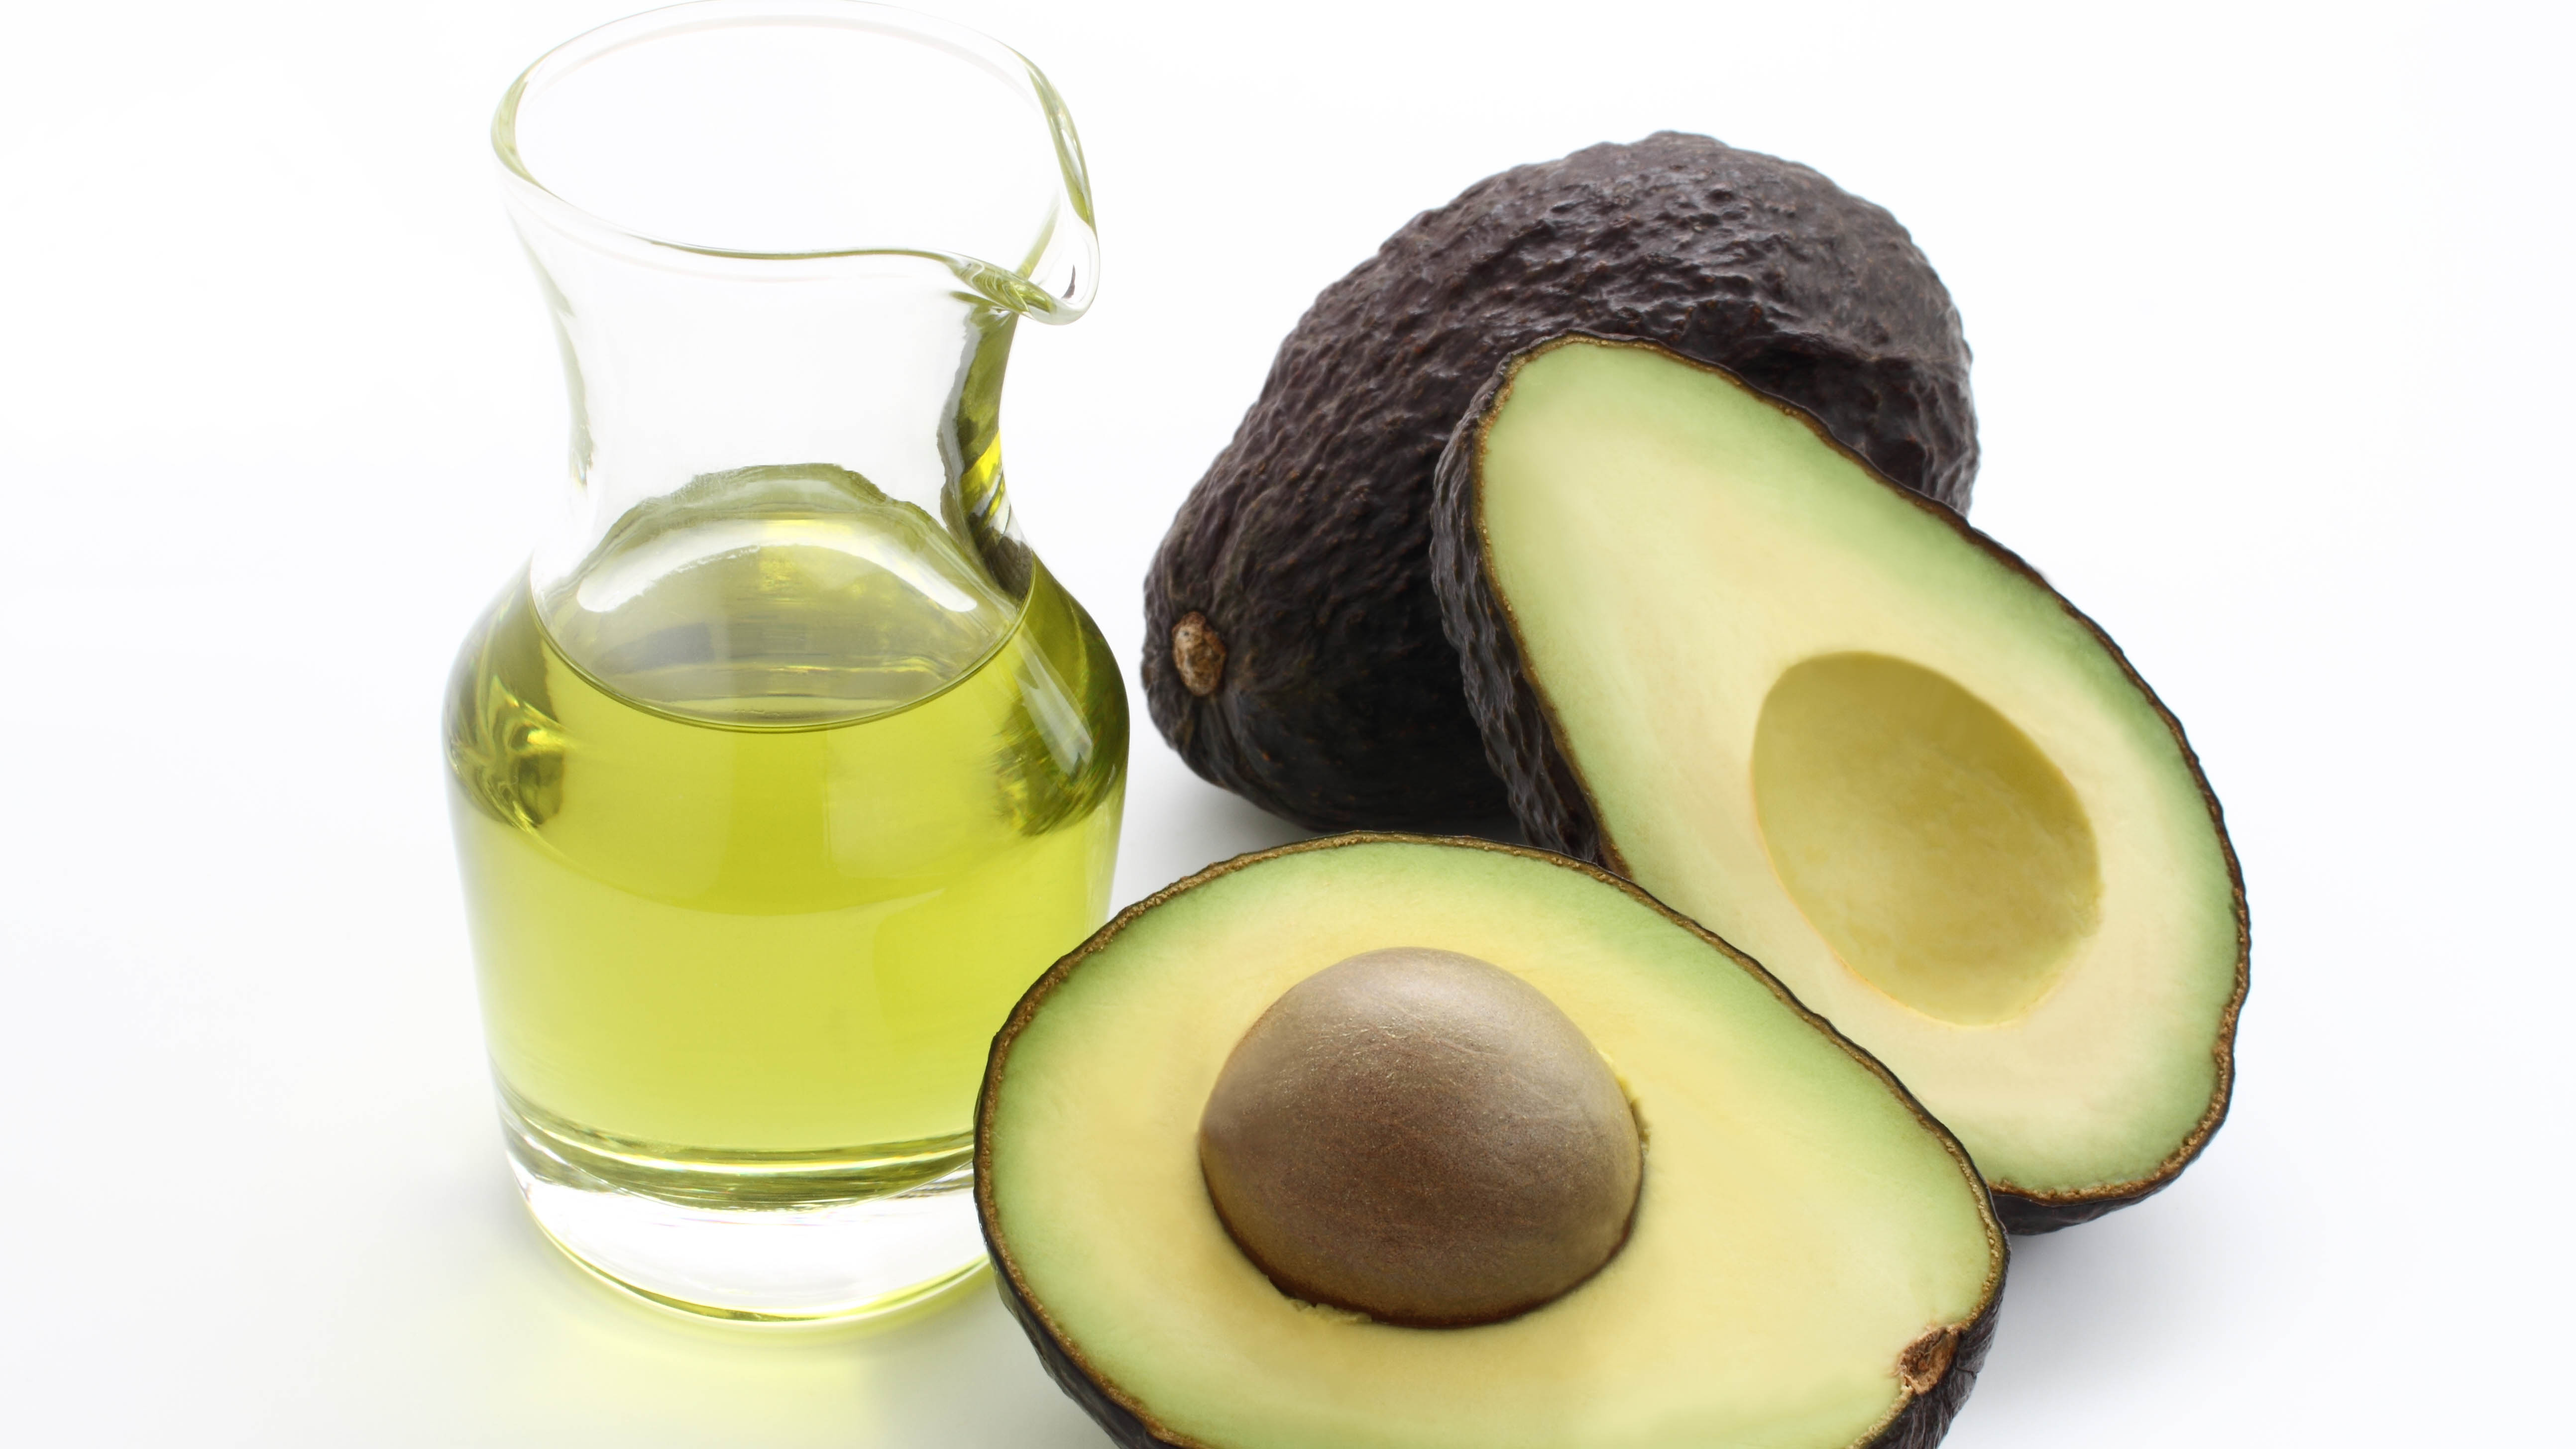 Avocado oil and avocados